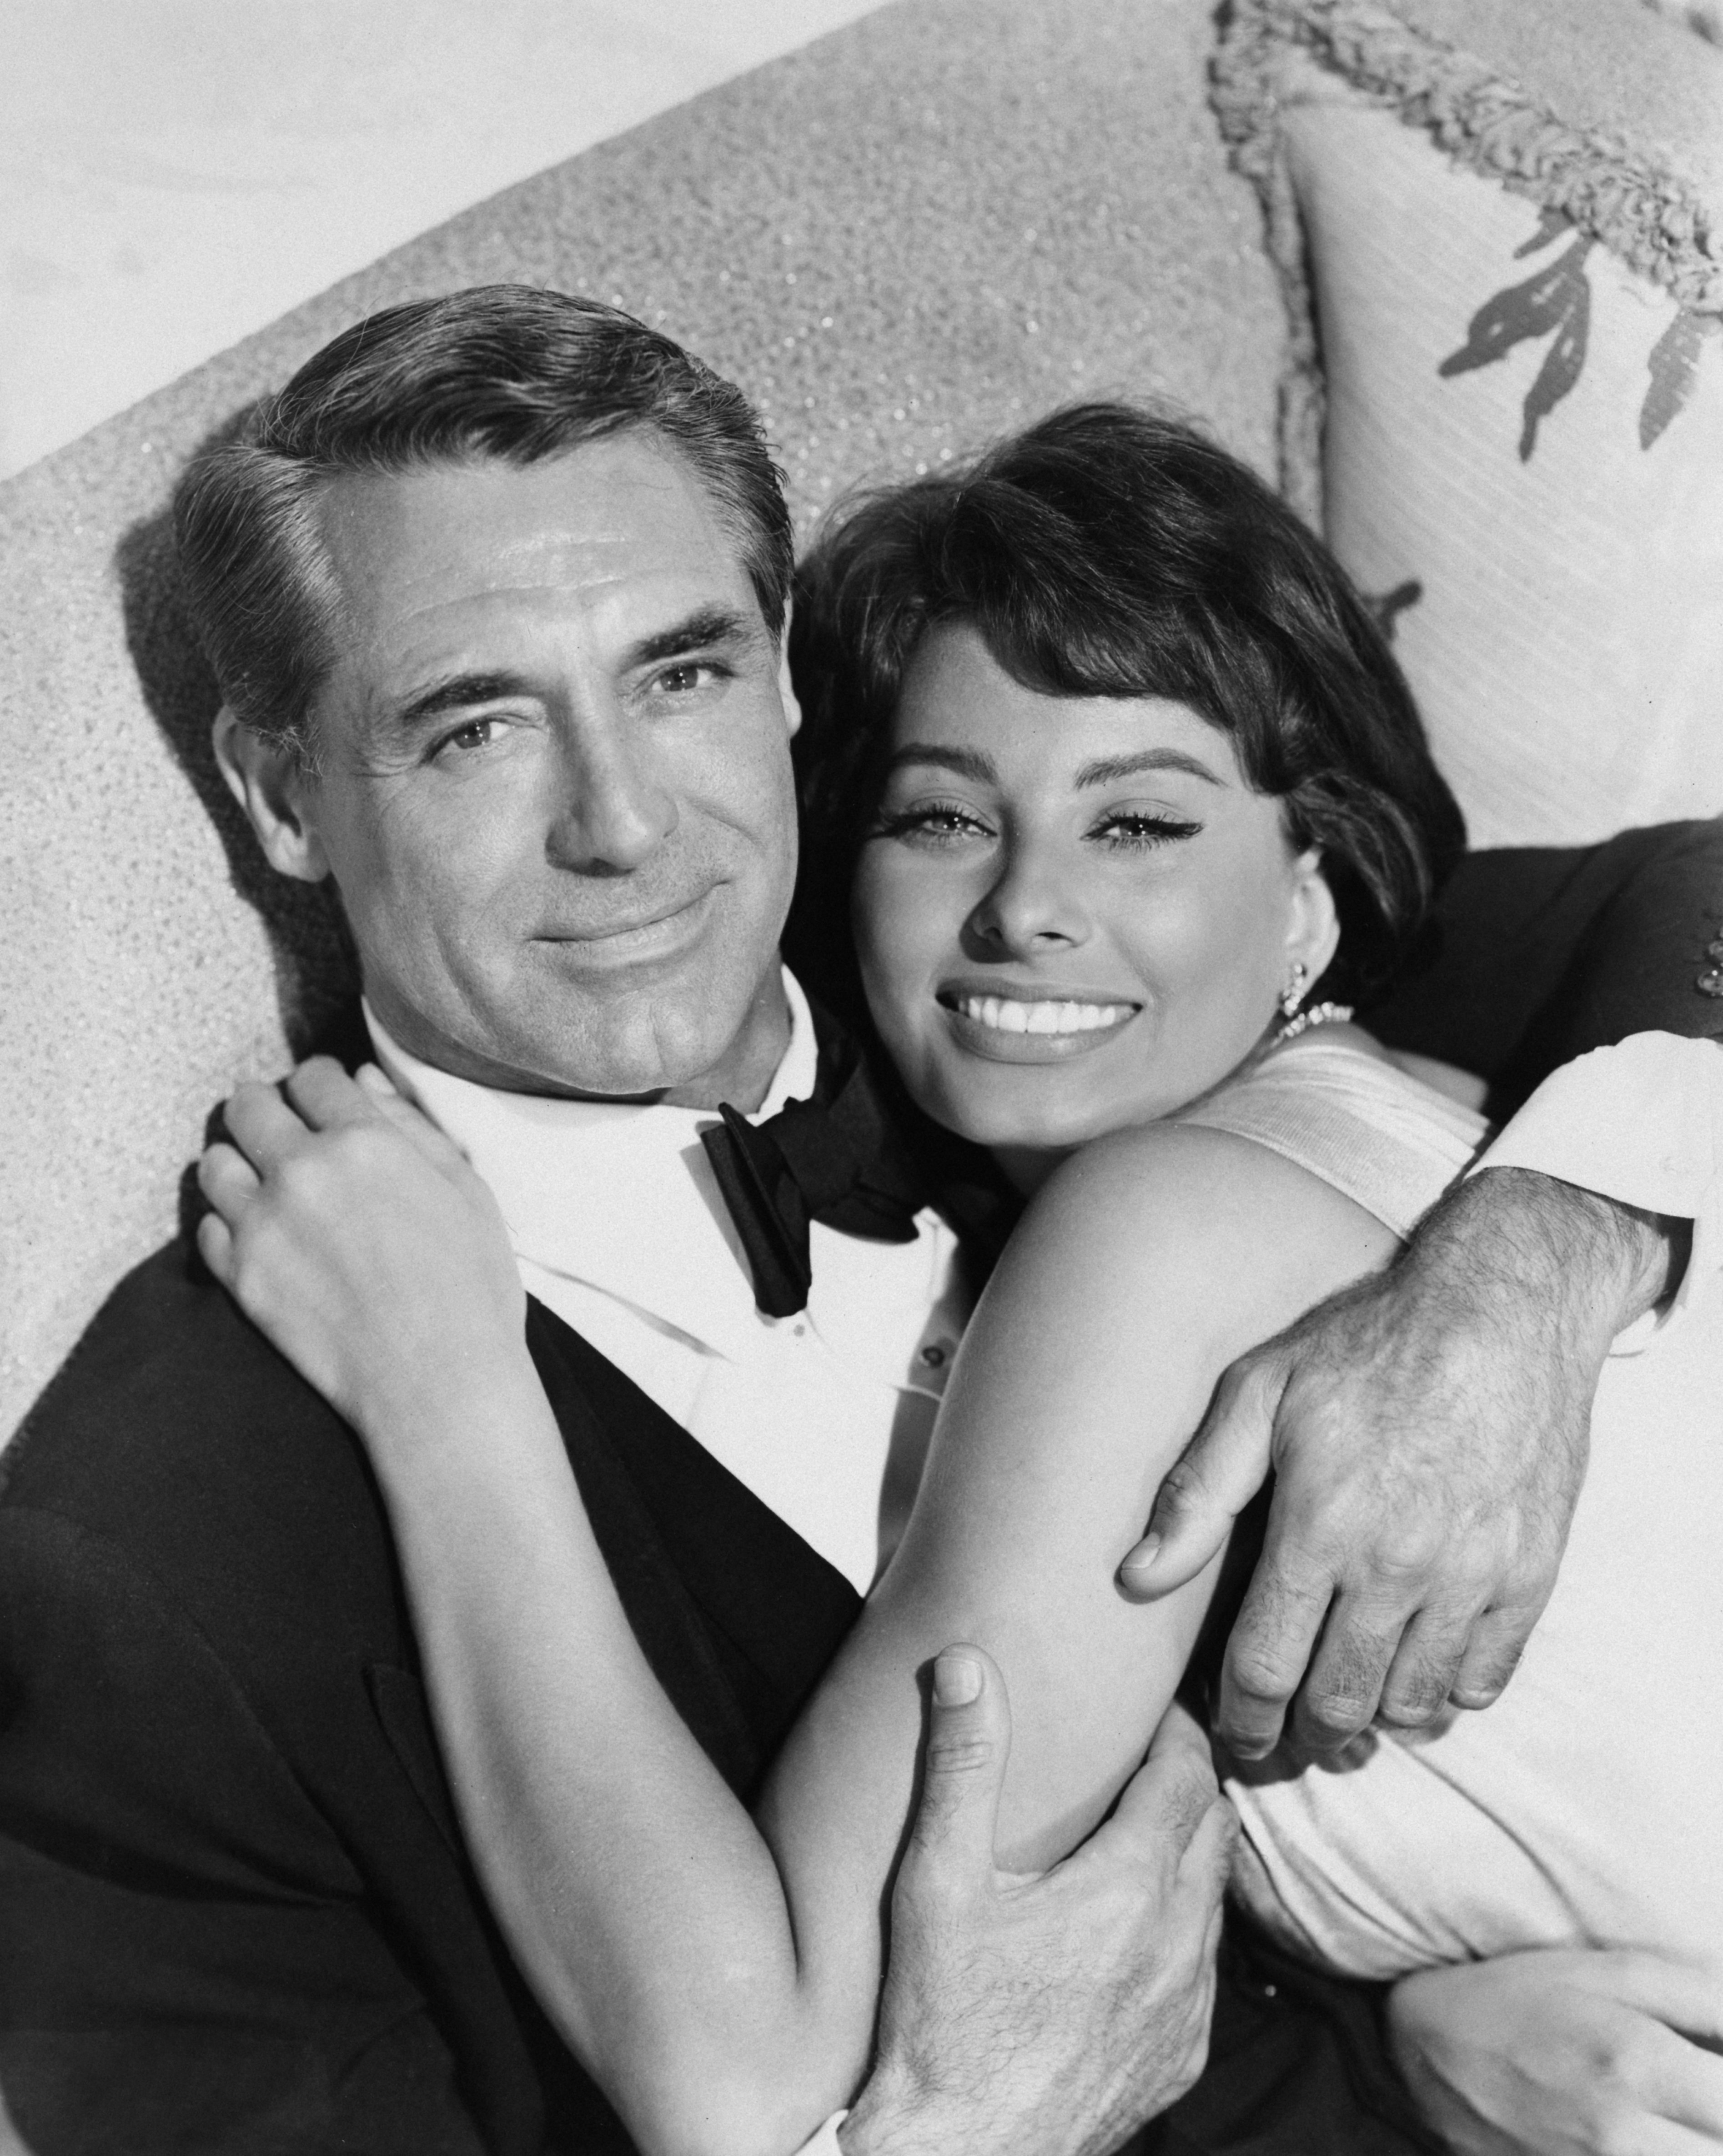 Der britisch-amerikanische Schauspieler Cary Grant mit der italienischen Schauspielerin Sophia Loren, seinem Co-Star im Film "Houseboat", 1958. | Quelle: Getty Images